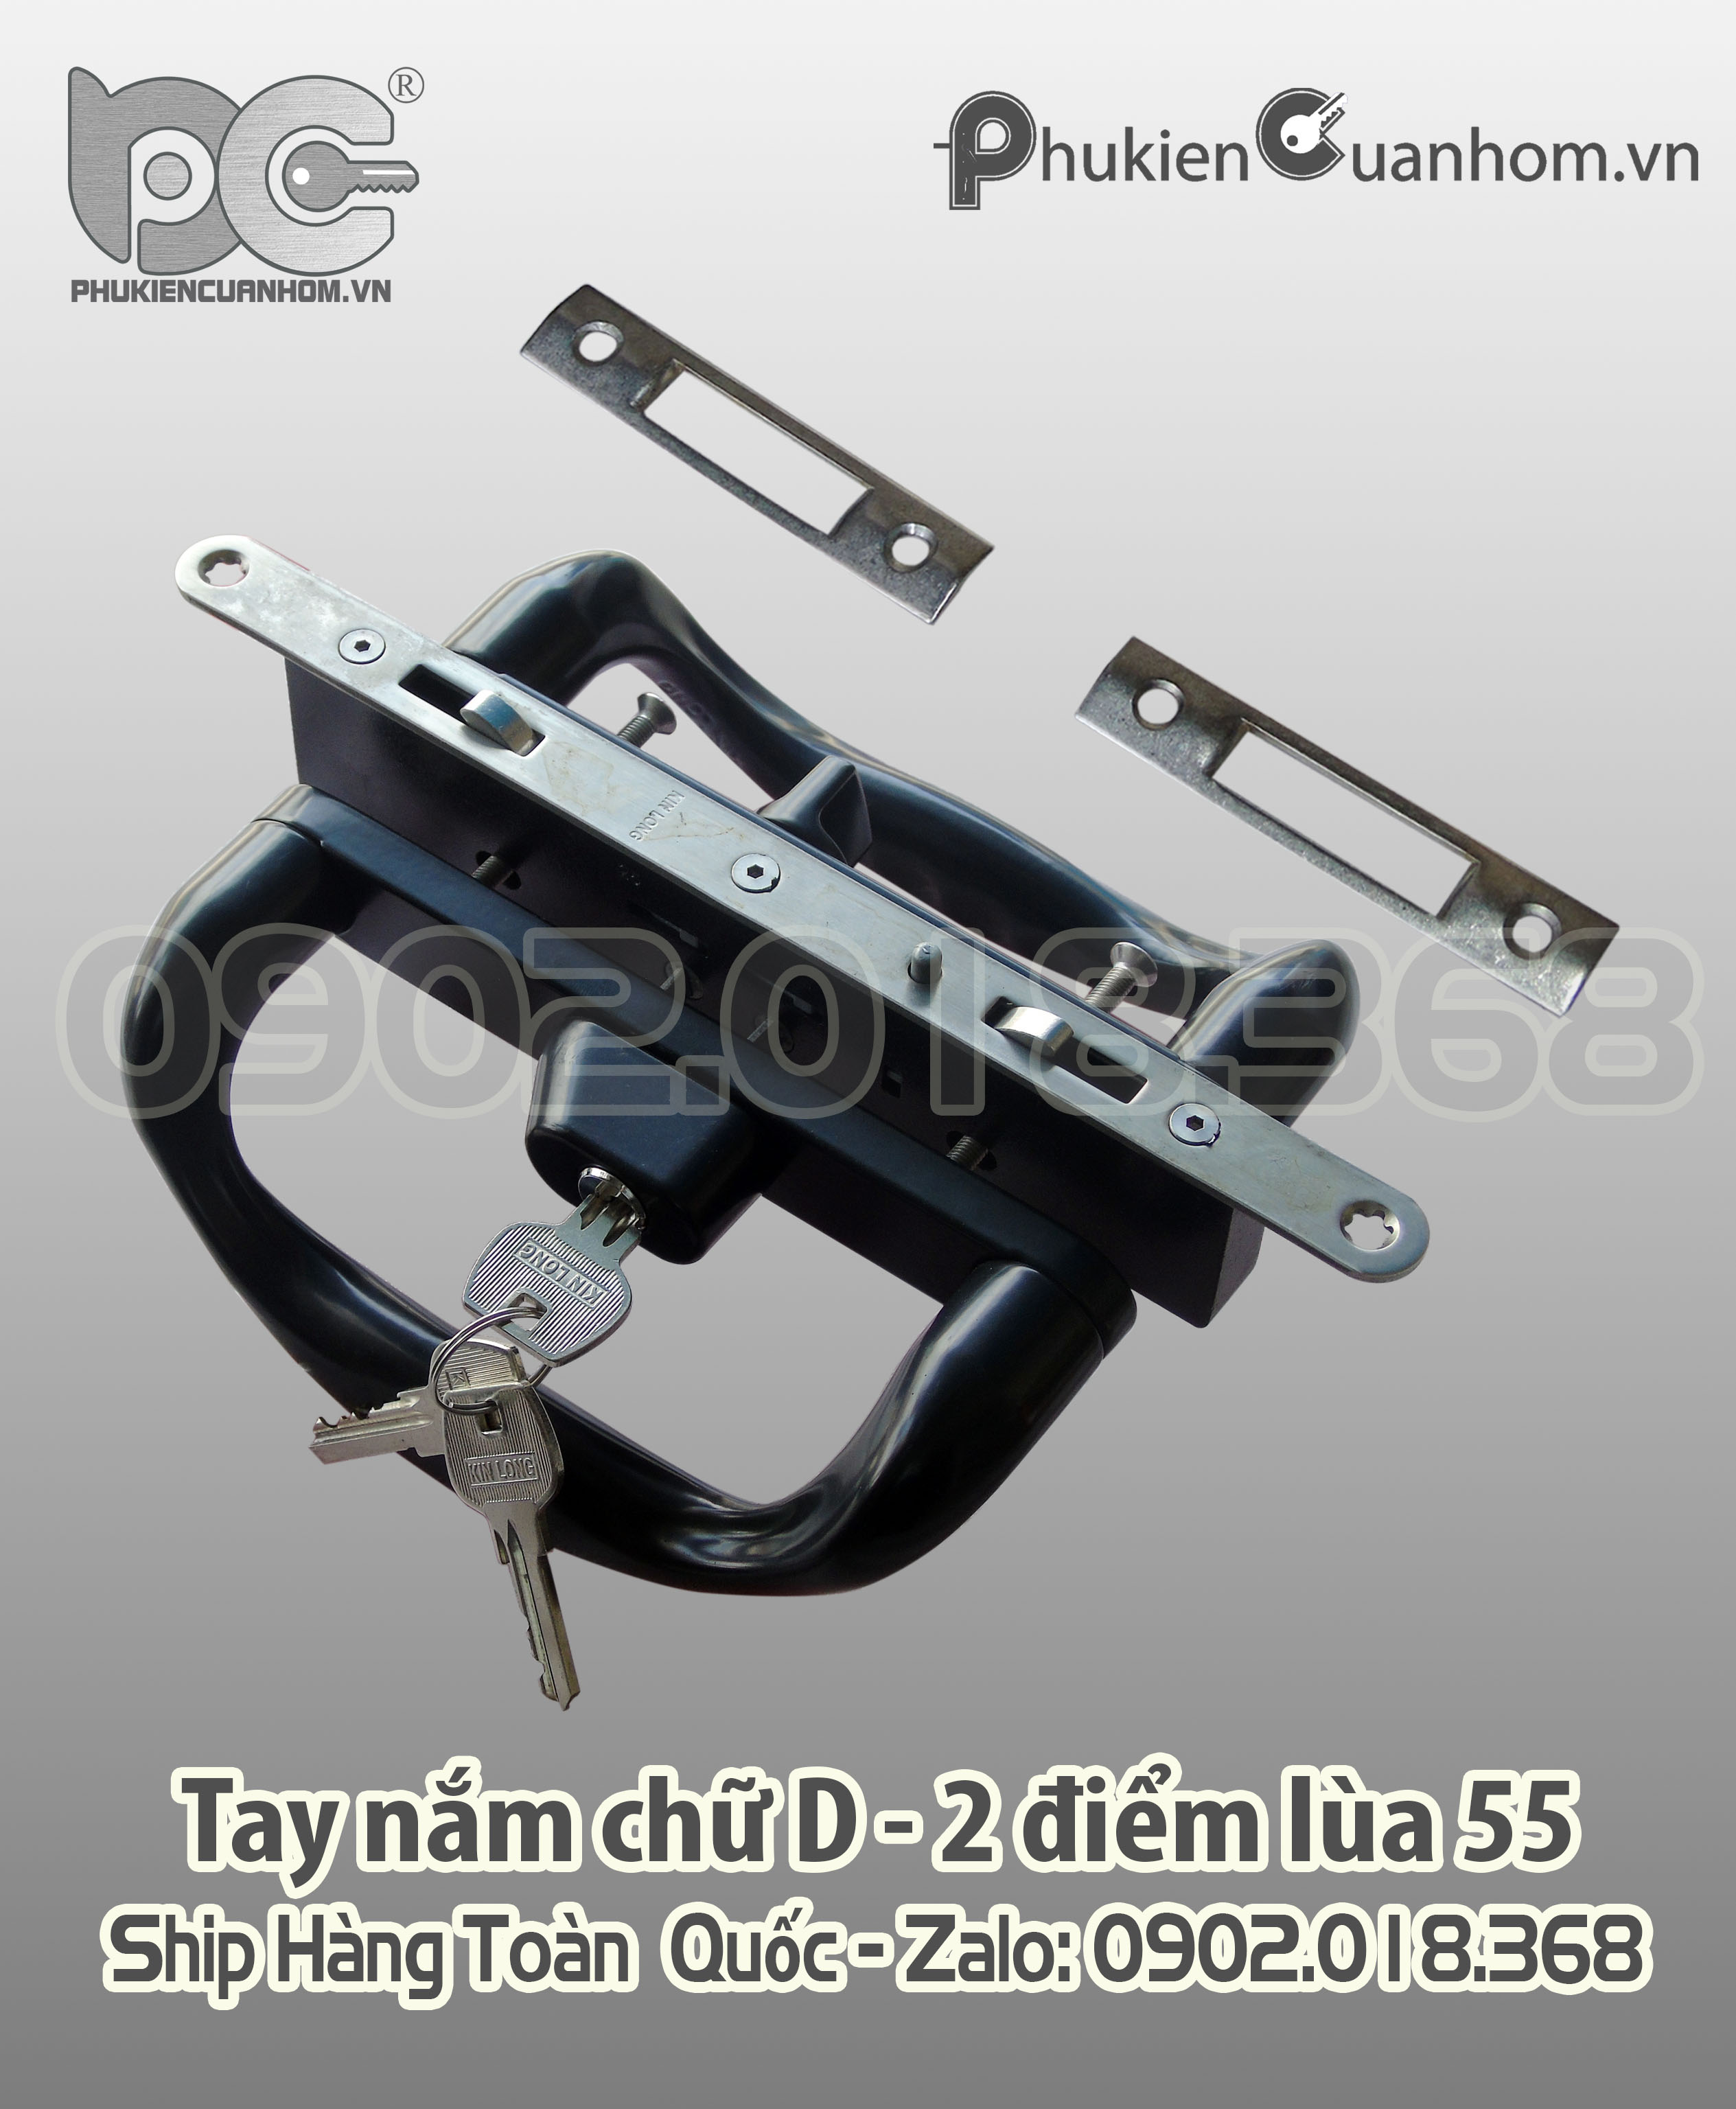 Khóa chữ D cửa lùa có chìa nhôm Xingfa hệ 55 dày 1.4mm